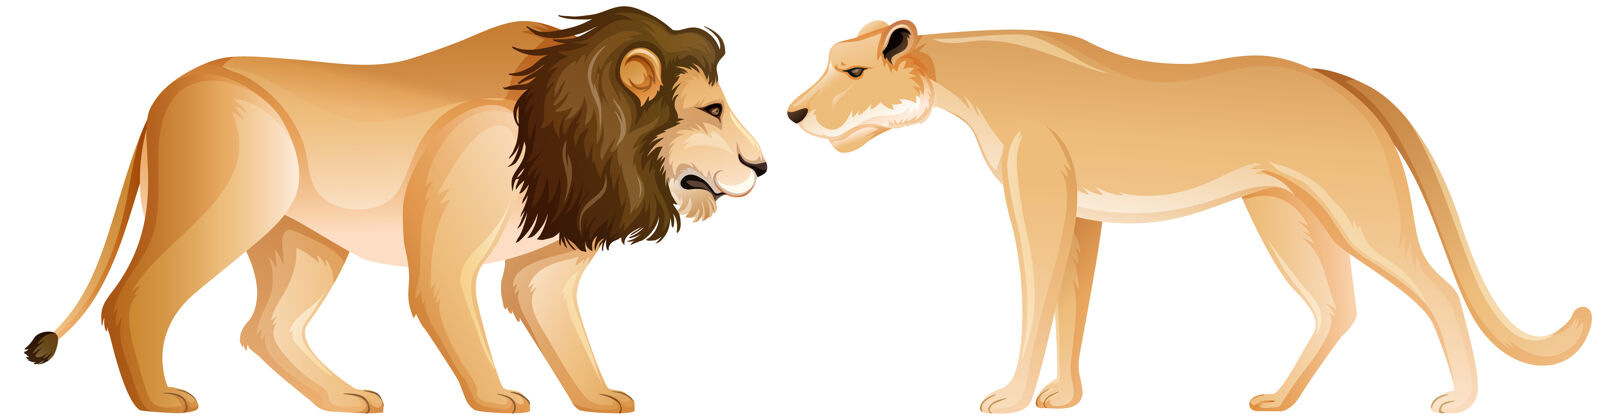 男性狮子和母狮站在白色背景上动物园狮子人